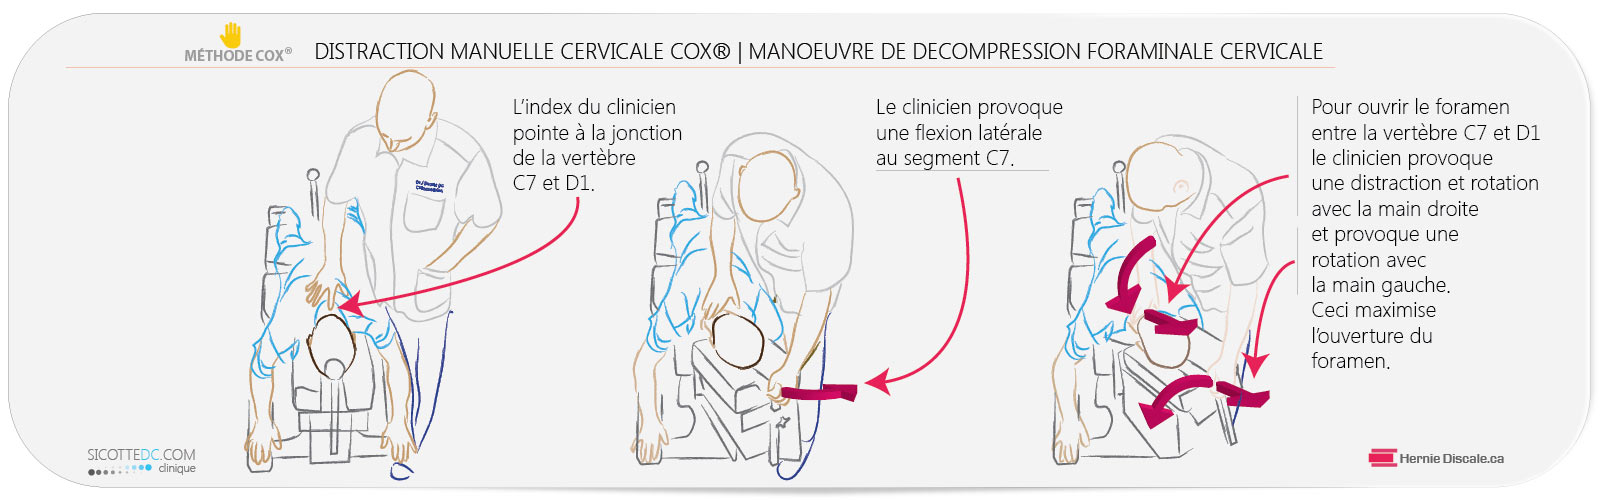 Manoeuvre de décompression foraminale avec la méthode Cox une distraction traitement des segments cervicaux C6-C7.